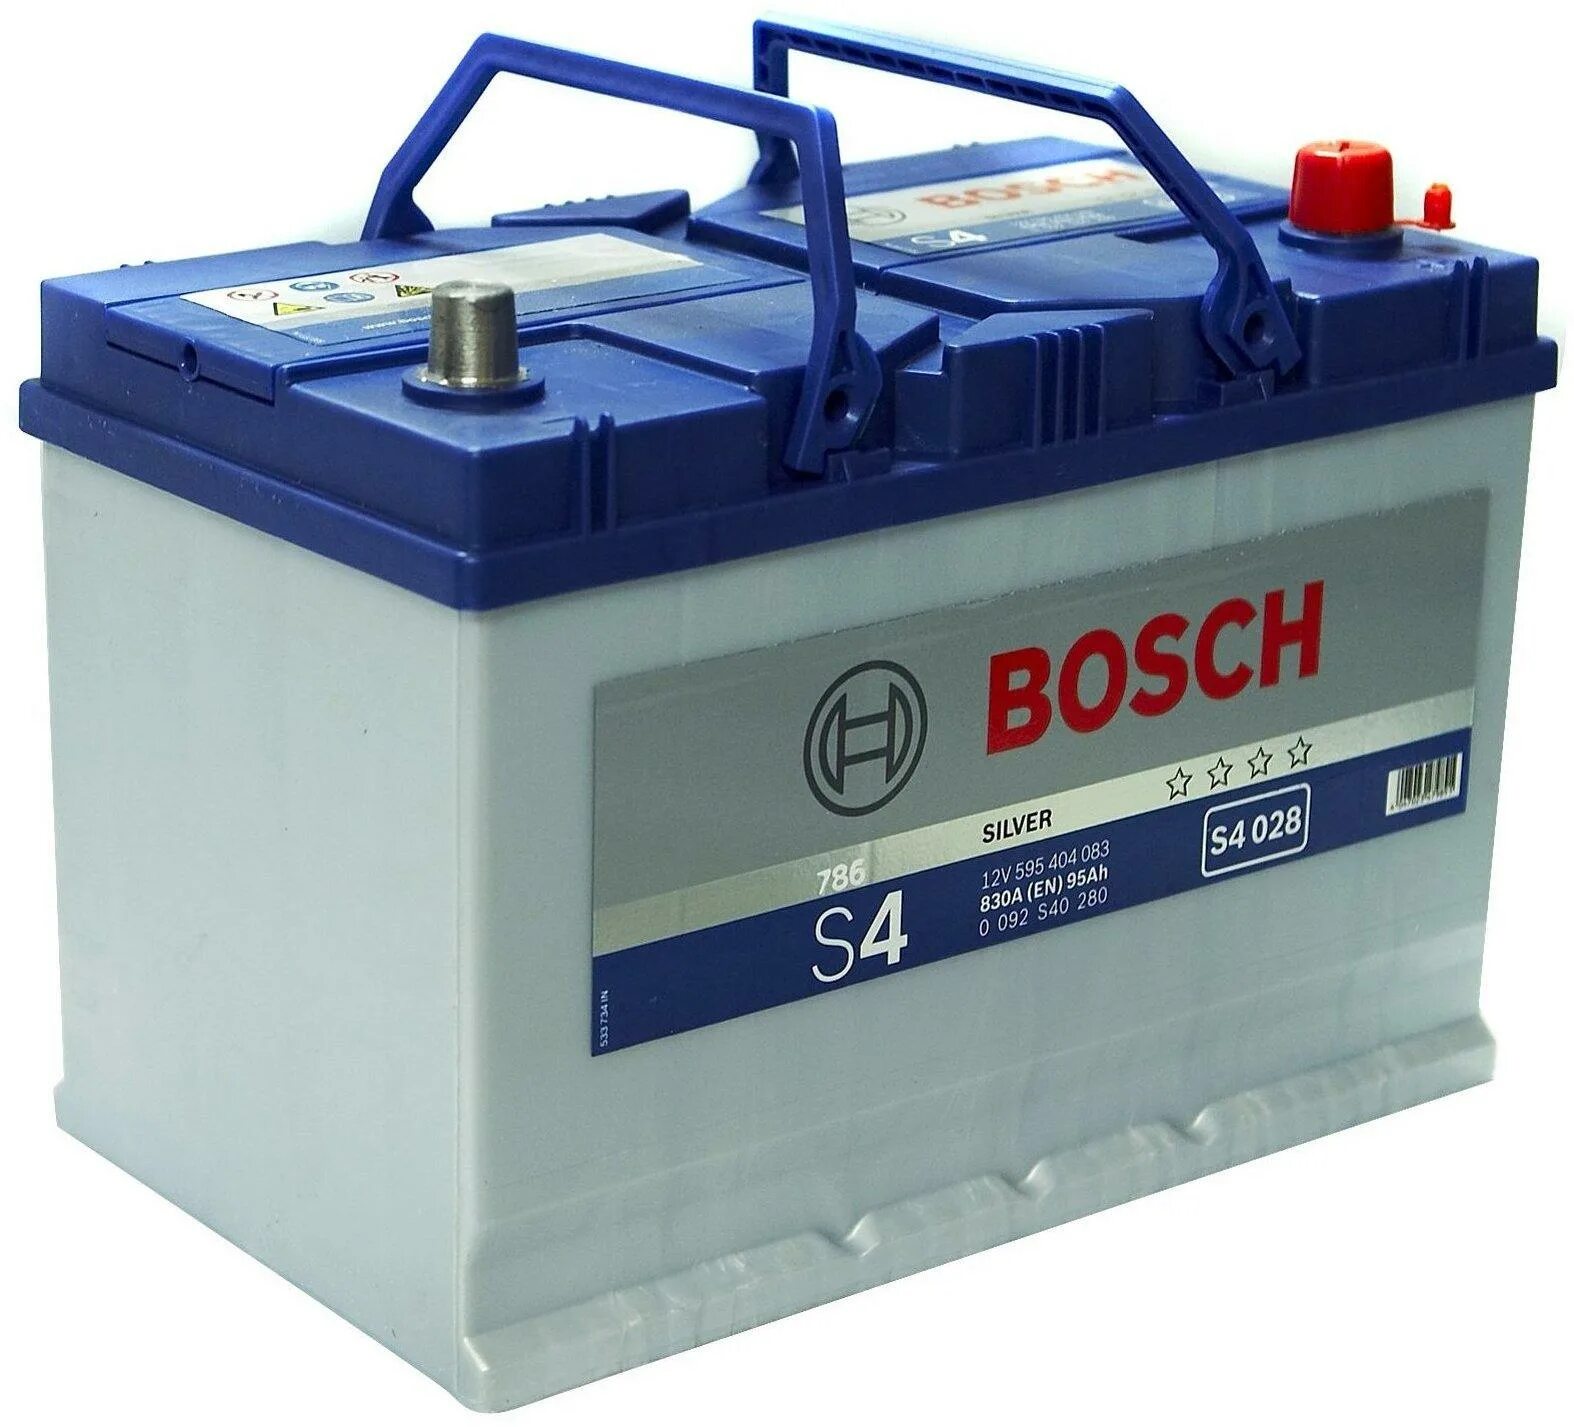 Купить аккумулятор бош 12. Bosch s4 028 830а 95ah. Аккумулятор Bosch s4 028 95ah. S4 028 830a 95ah. S4 028 Bosch аккумулятор.